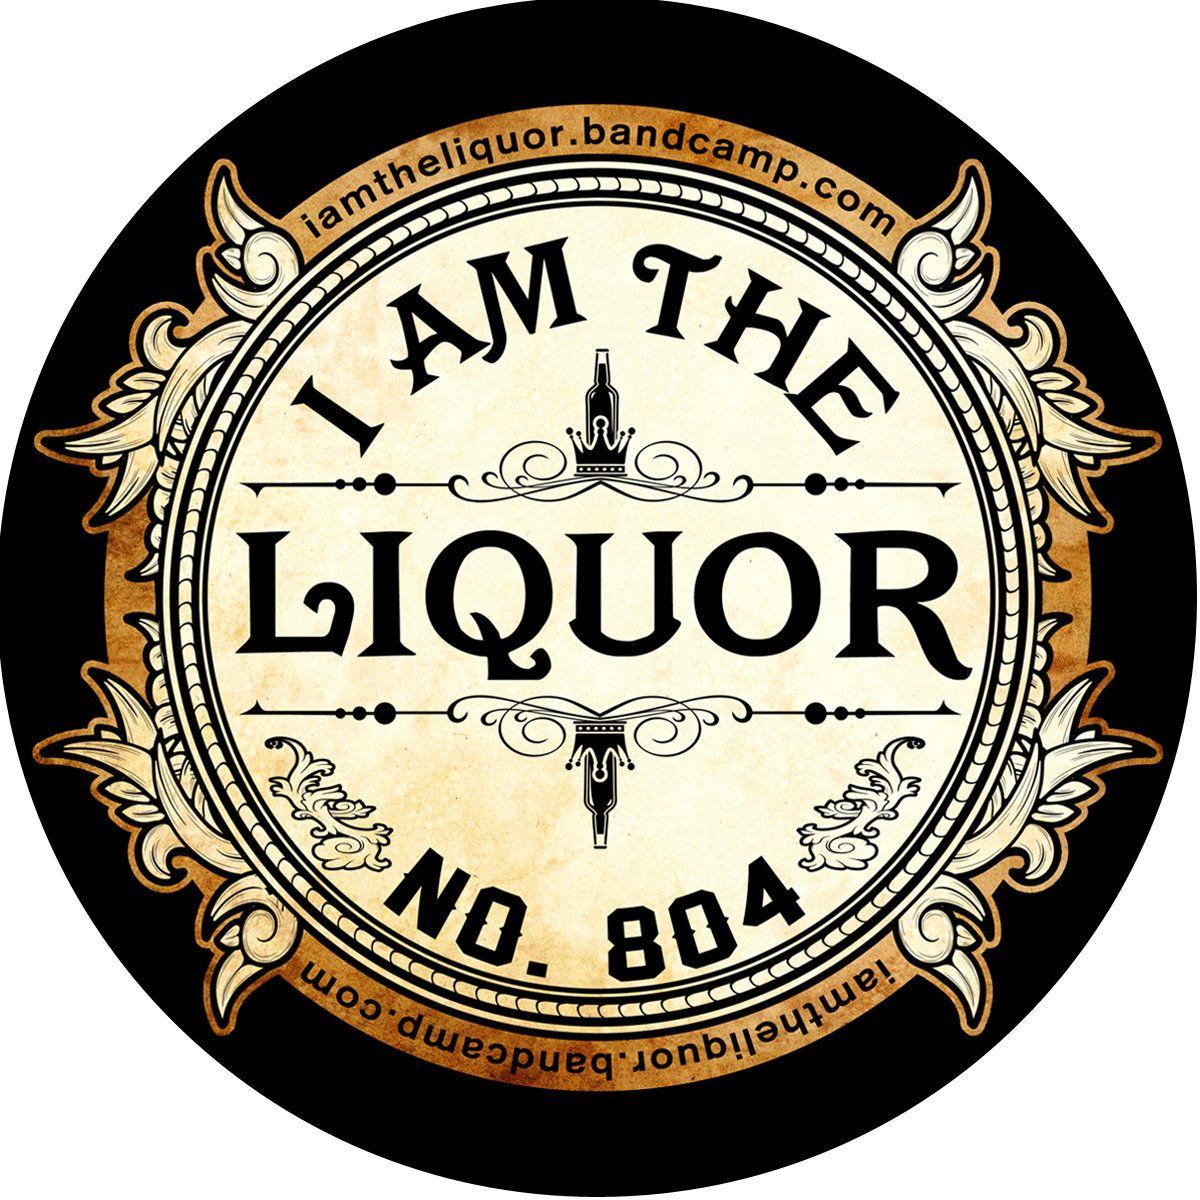 Liquor Company Logo - I am the liquor. I am the liquor